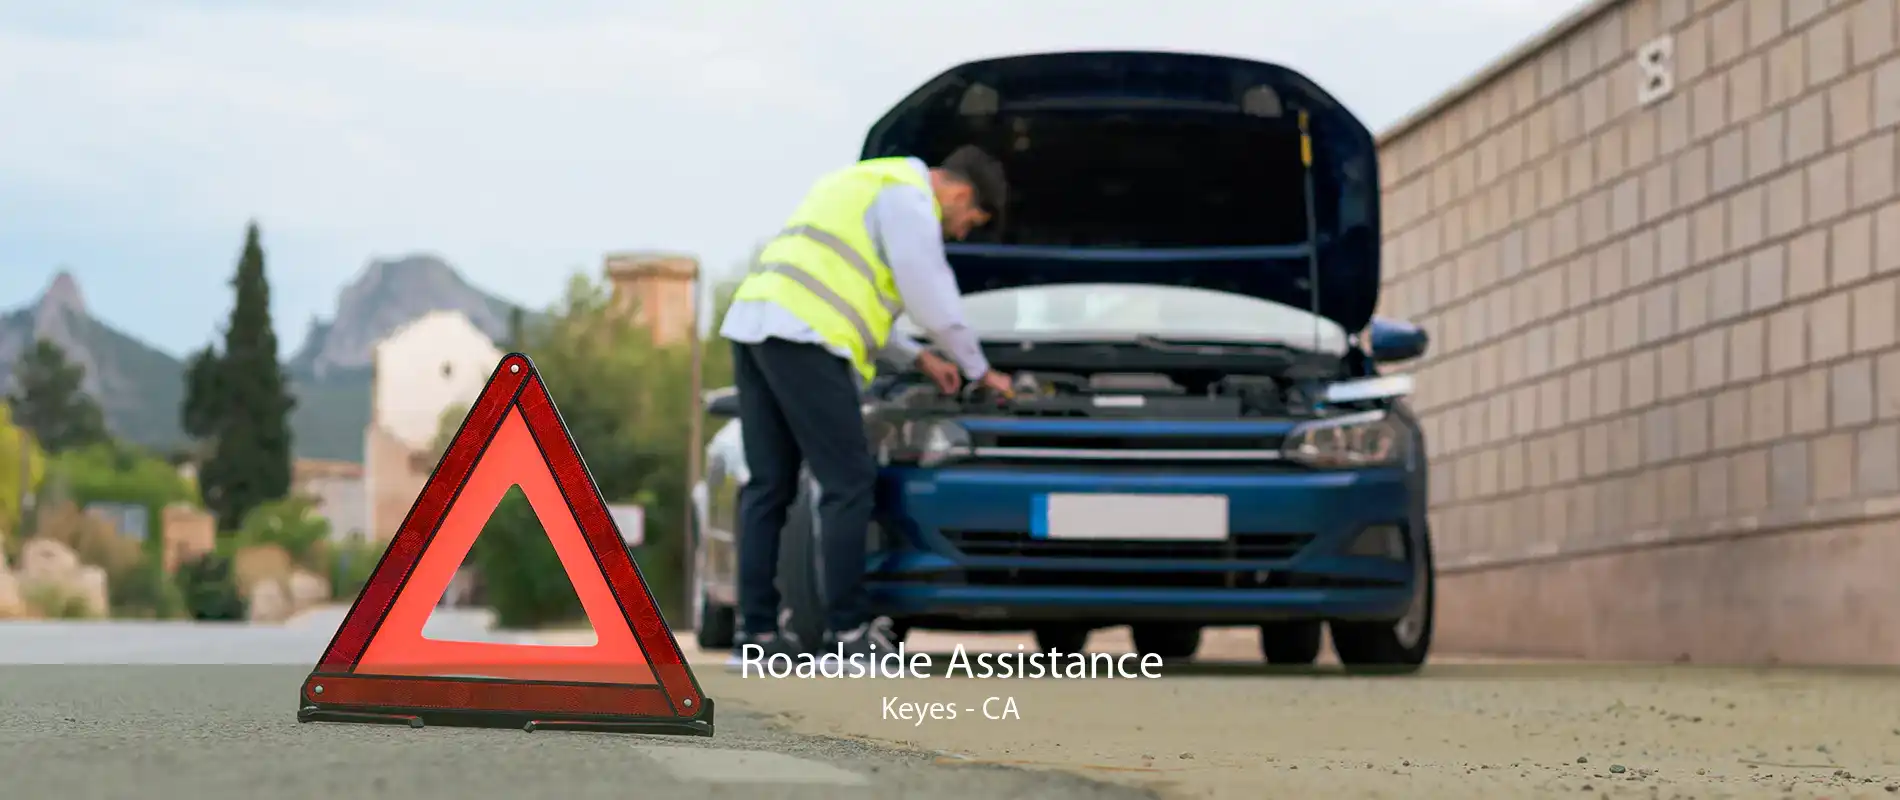 Roadside Assistance Keyes - CA